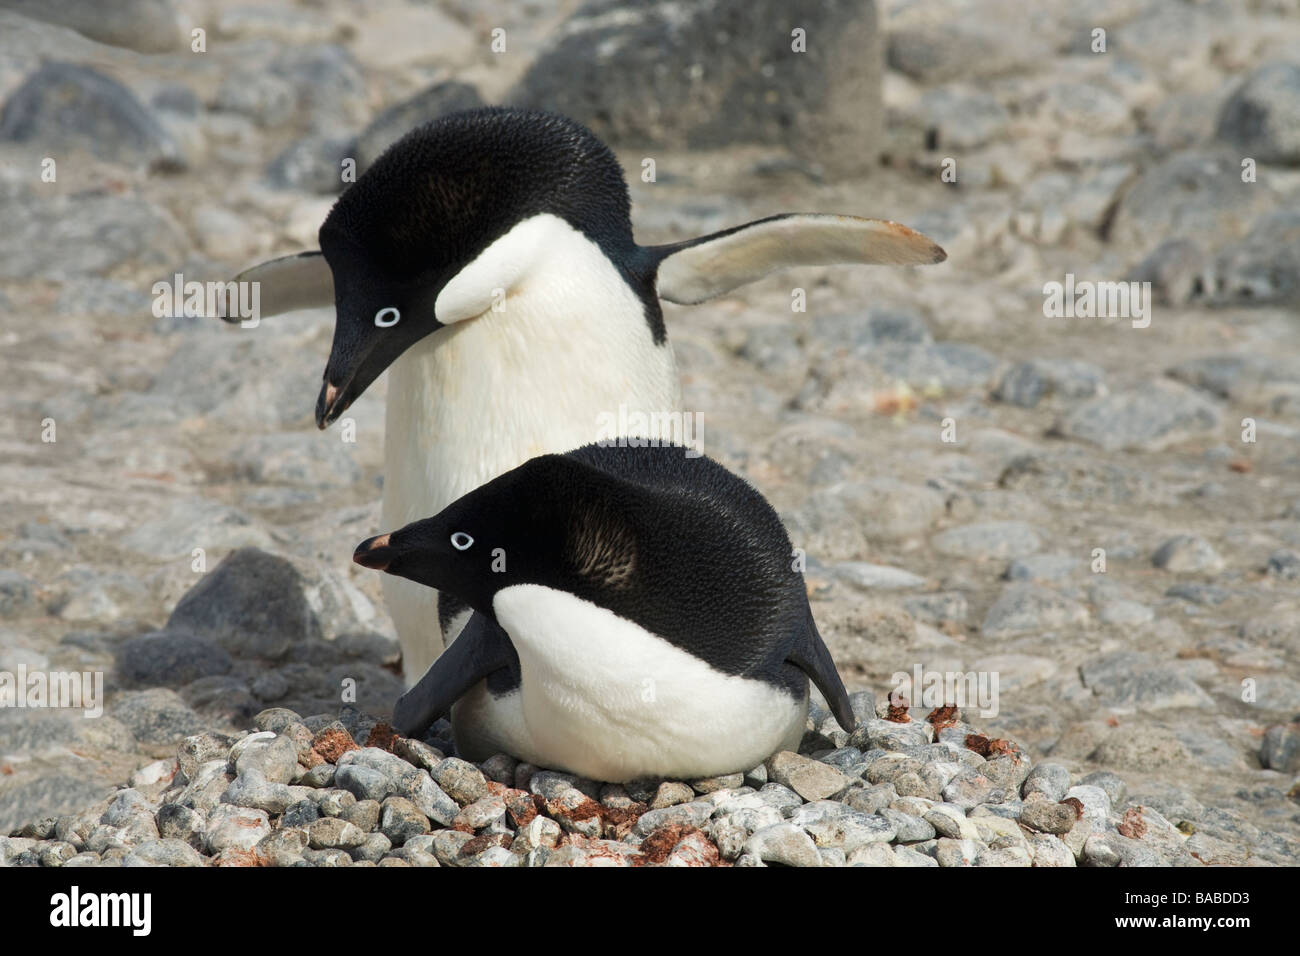 Las parejas reproductoras de pingüinos Adelia (Pygoscelis adeliae en nido de piedras pequeñas Isla Paulet Península Antártica La Antártida Foto de stock